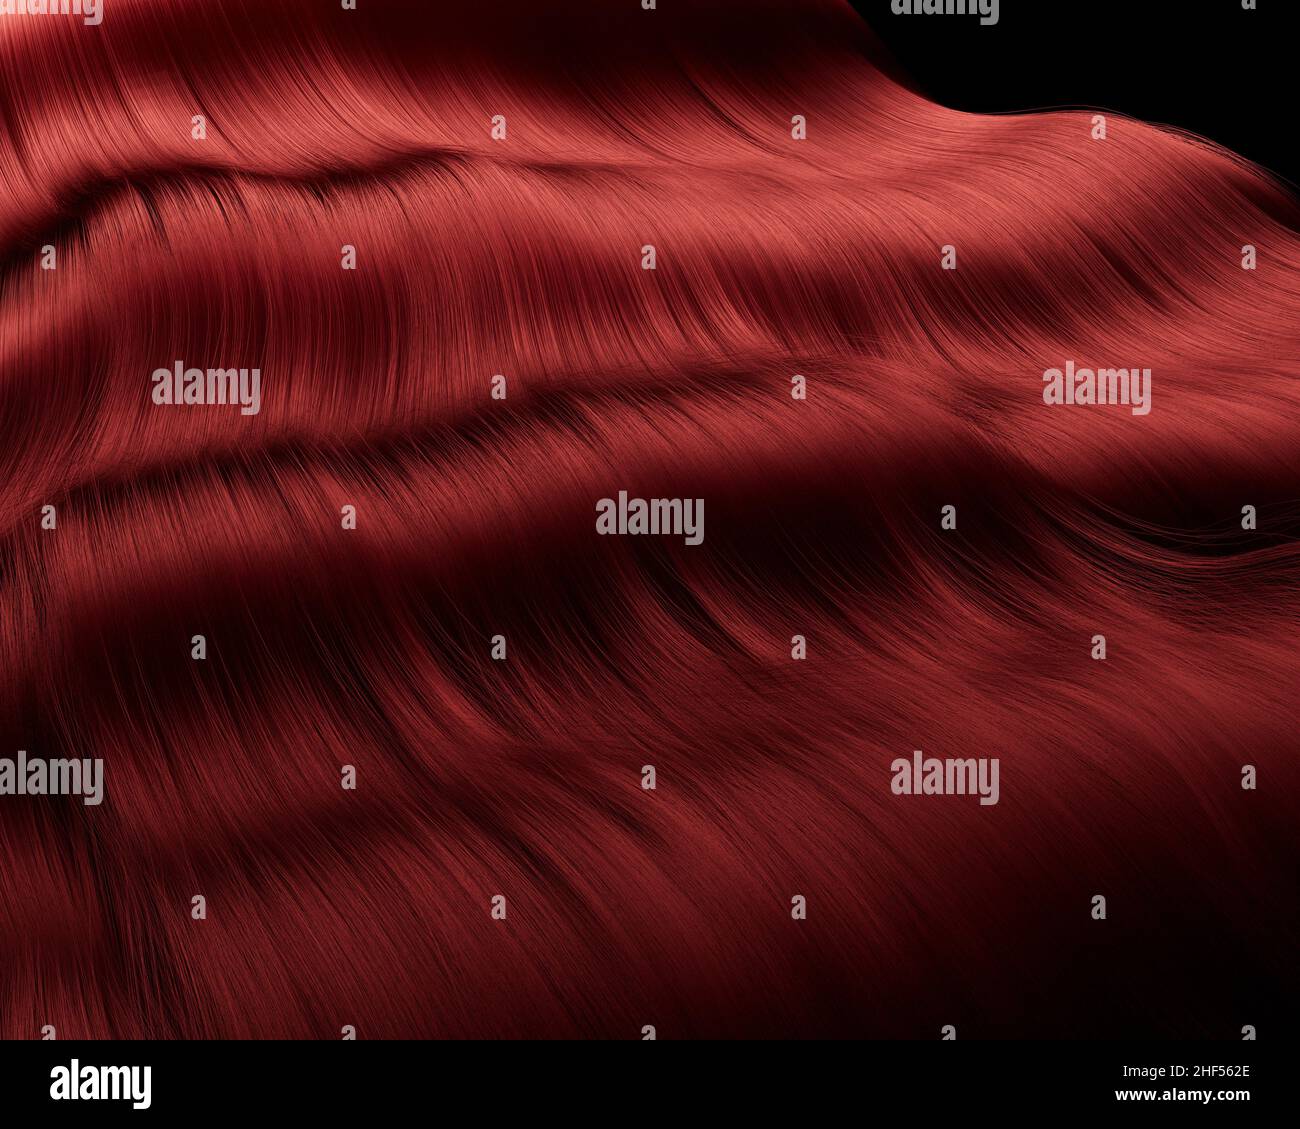 Nahaufnahme von dickem, rot-glänzendem, welligen Haar auf dunklem Hintergrund - 3D Render Stockfoto